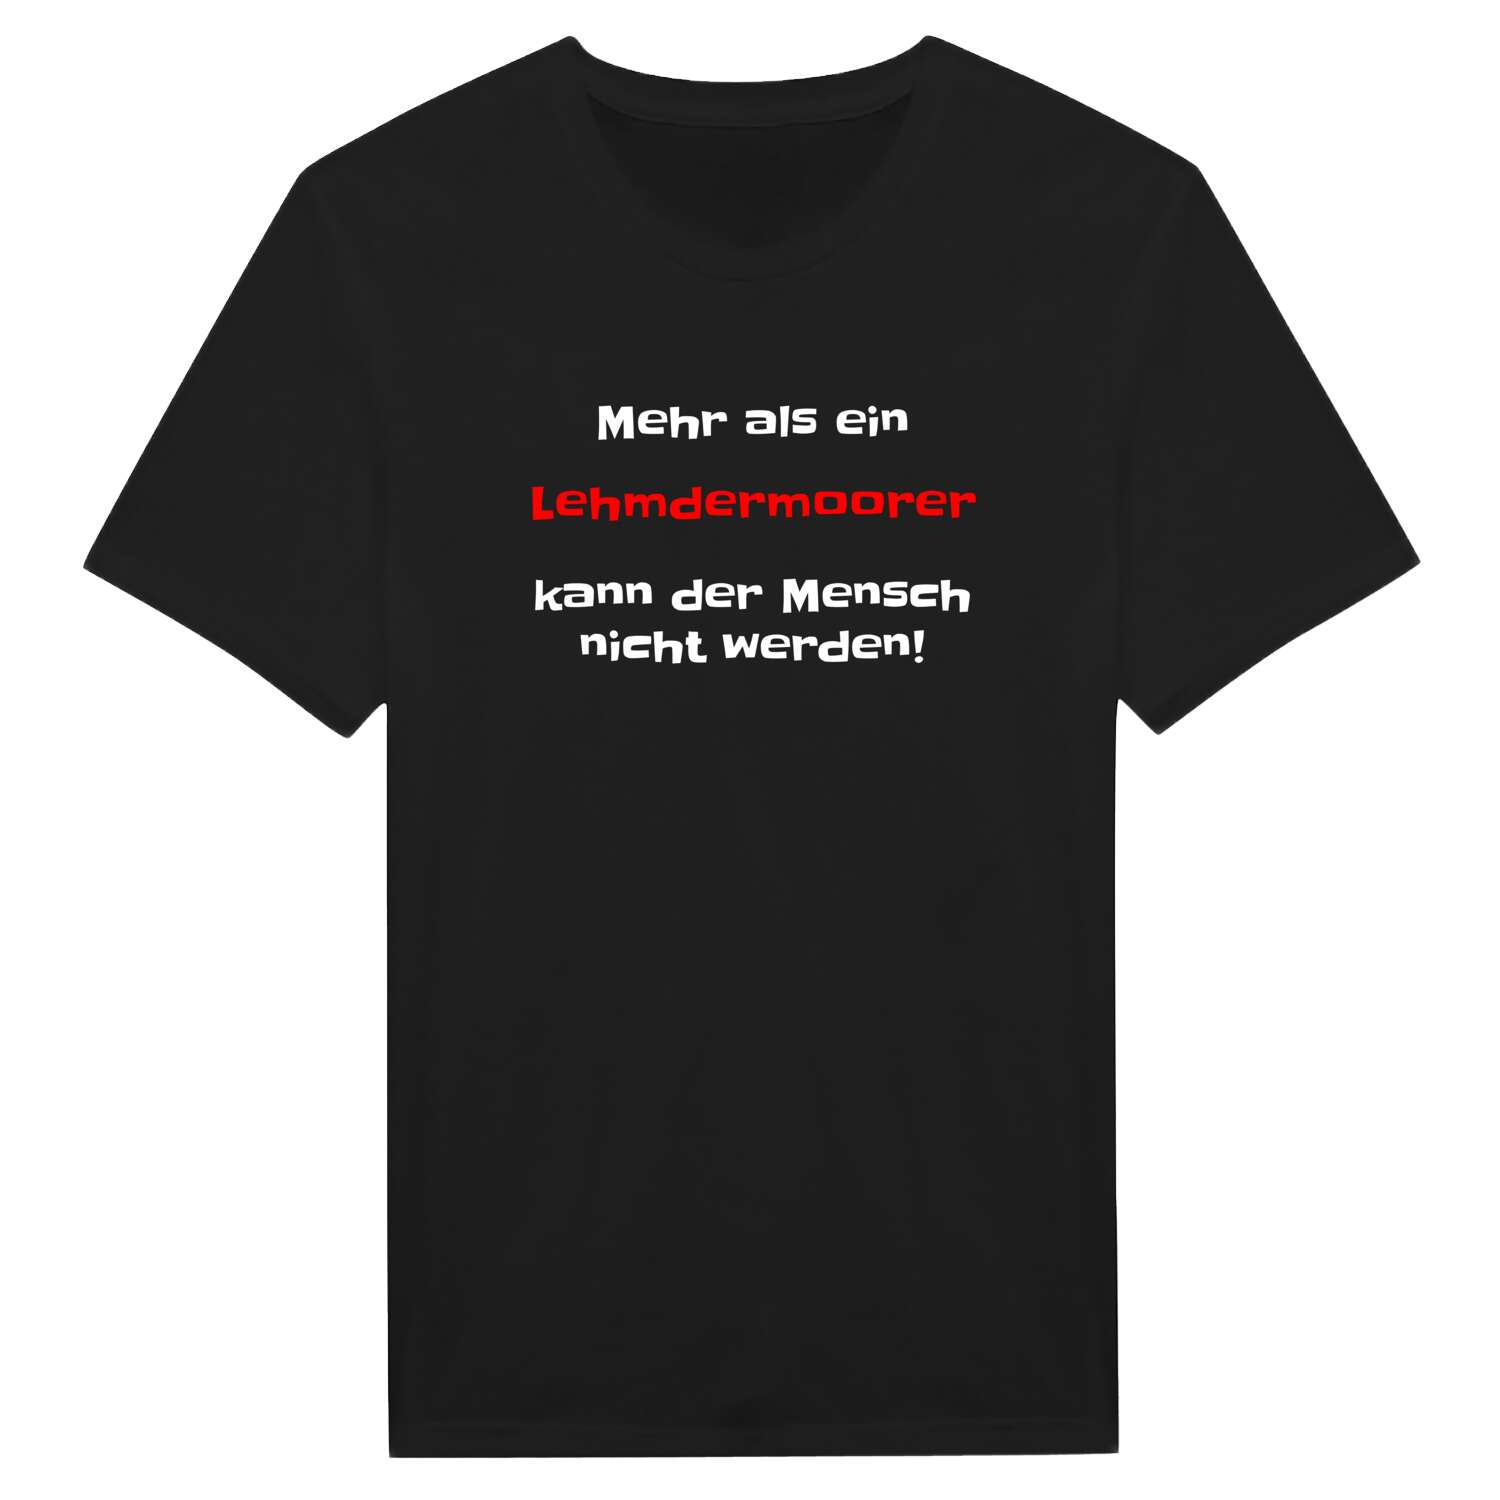 Lehmdermoor T-Shirt »Mehr als ein«